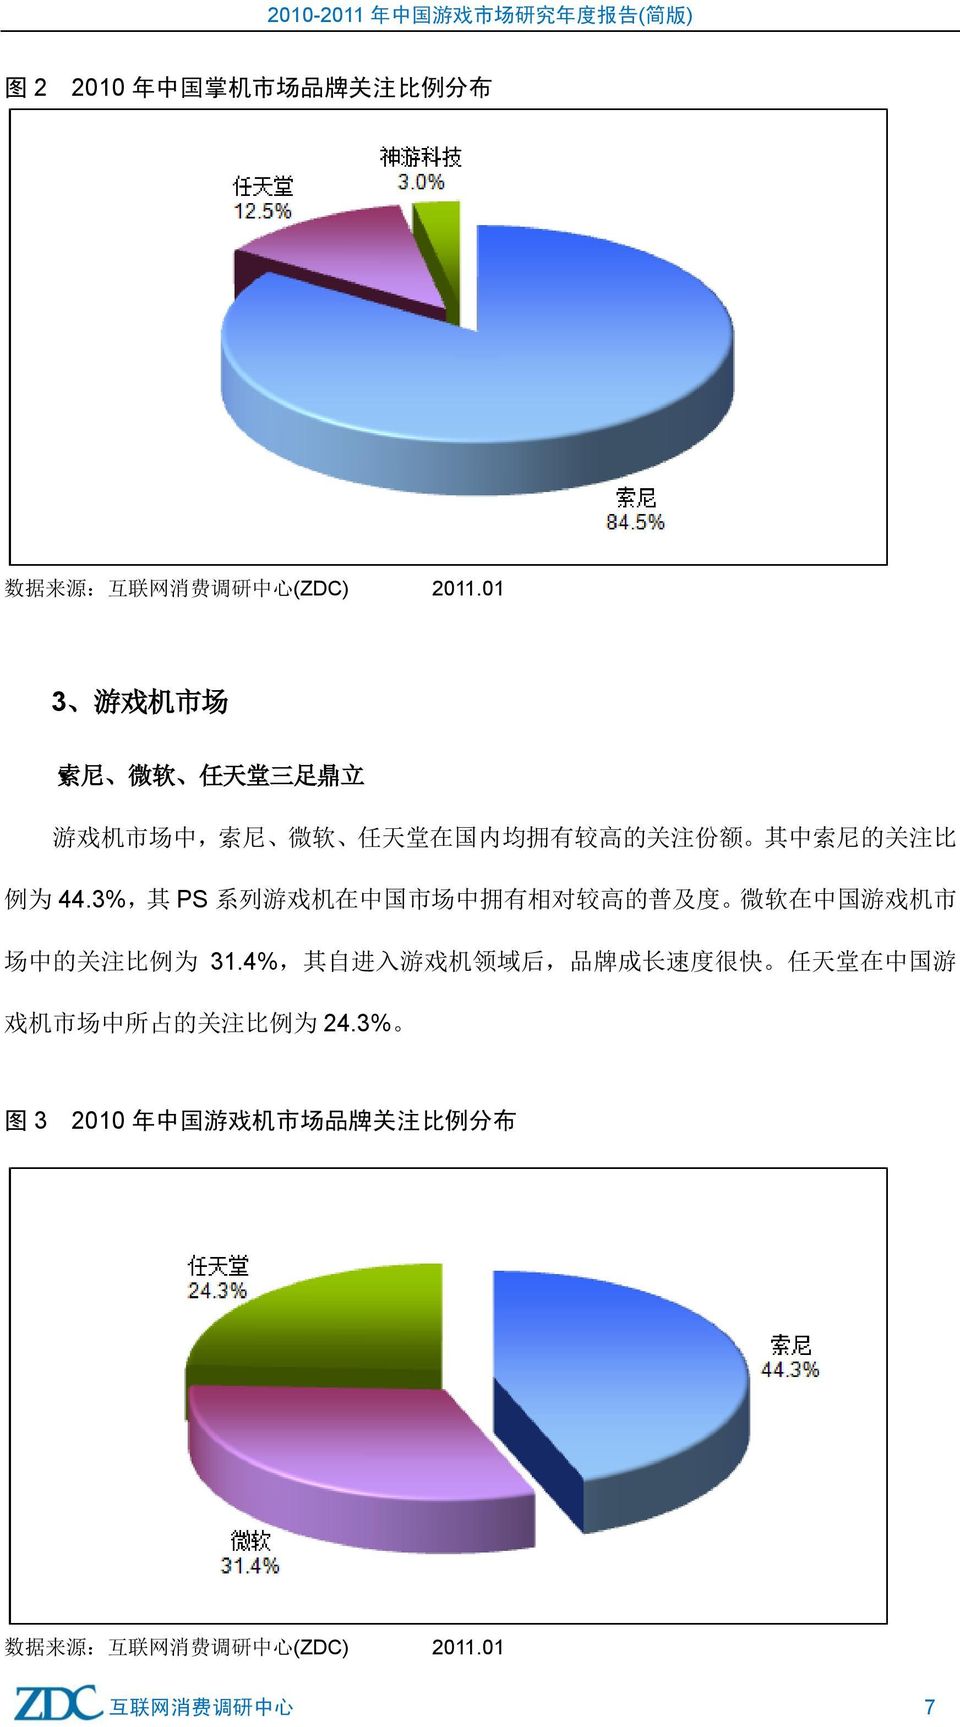 3%, 其 PS 系 列 游 戏 机 在 中 国 市 场 中 拥 有 相 对 较 高 的 普 及 度 微 软 在 中 国 游 戏 机 市 场 中 的 关 注 比 例 为 31.